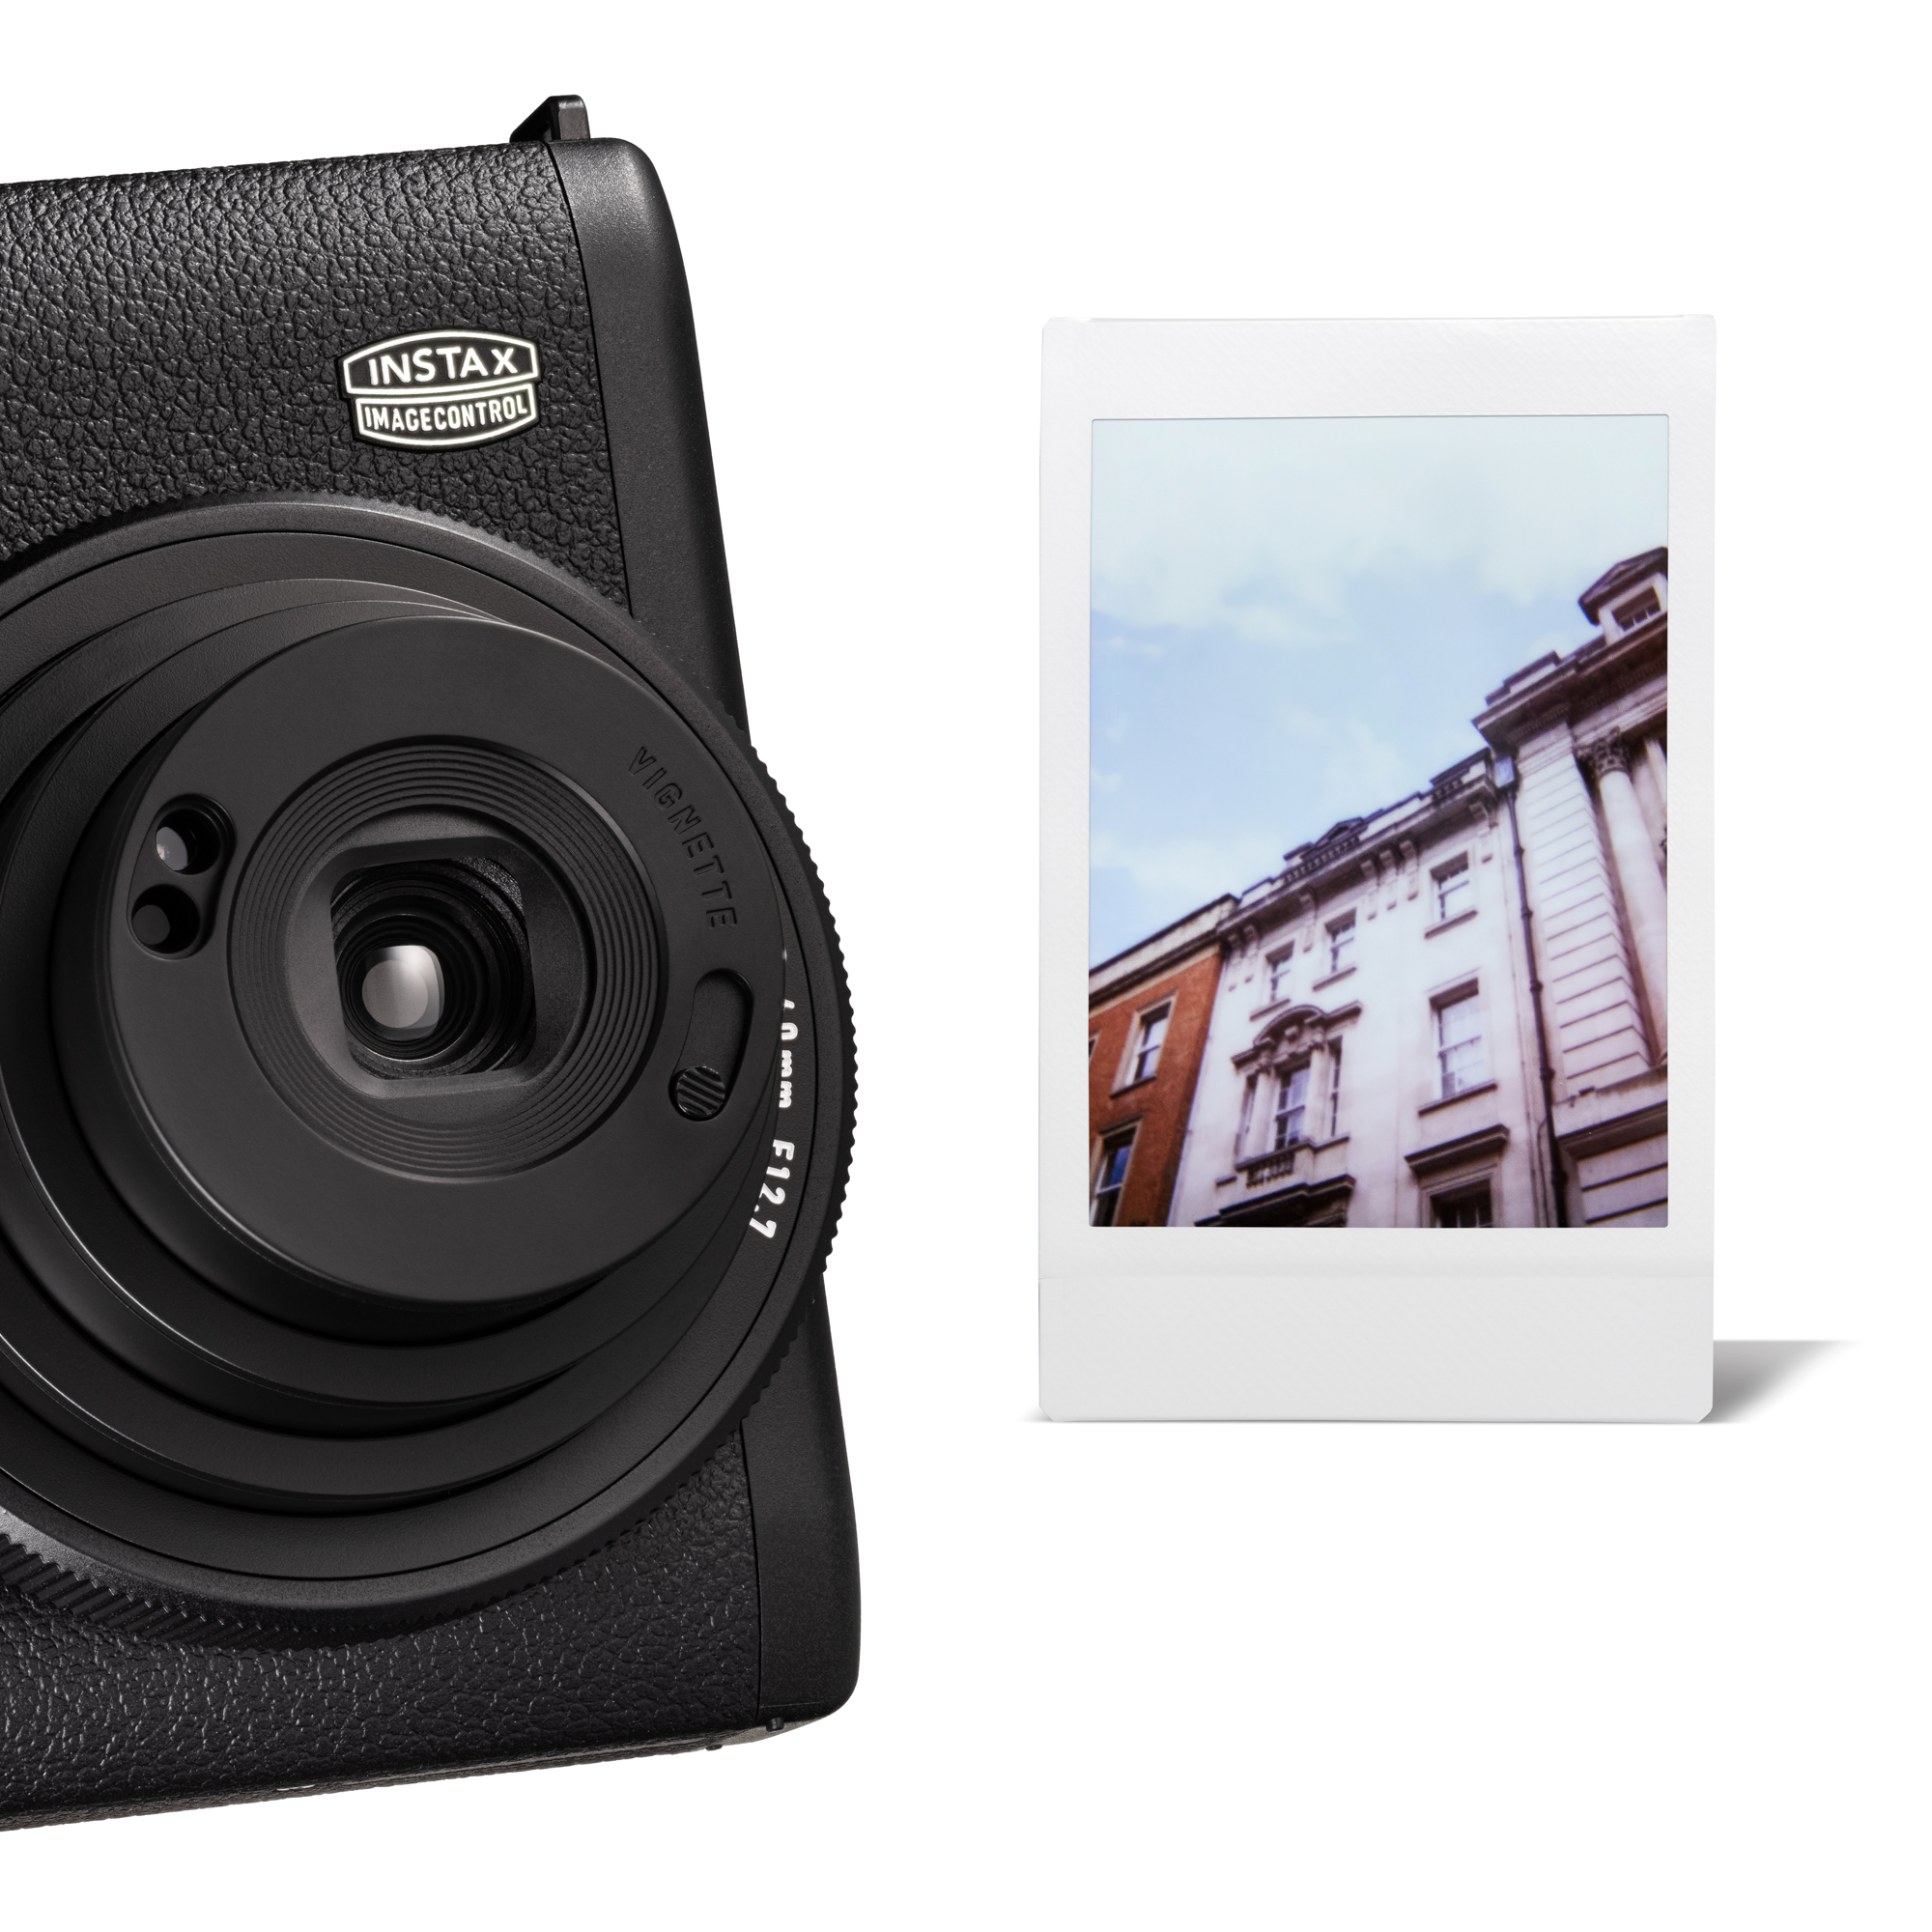 Kamera Instax Mini 99 Black Fujifilm